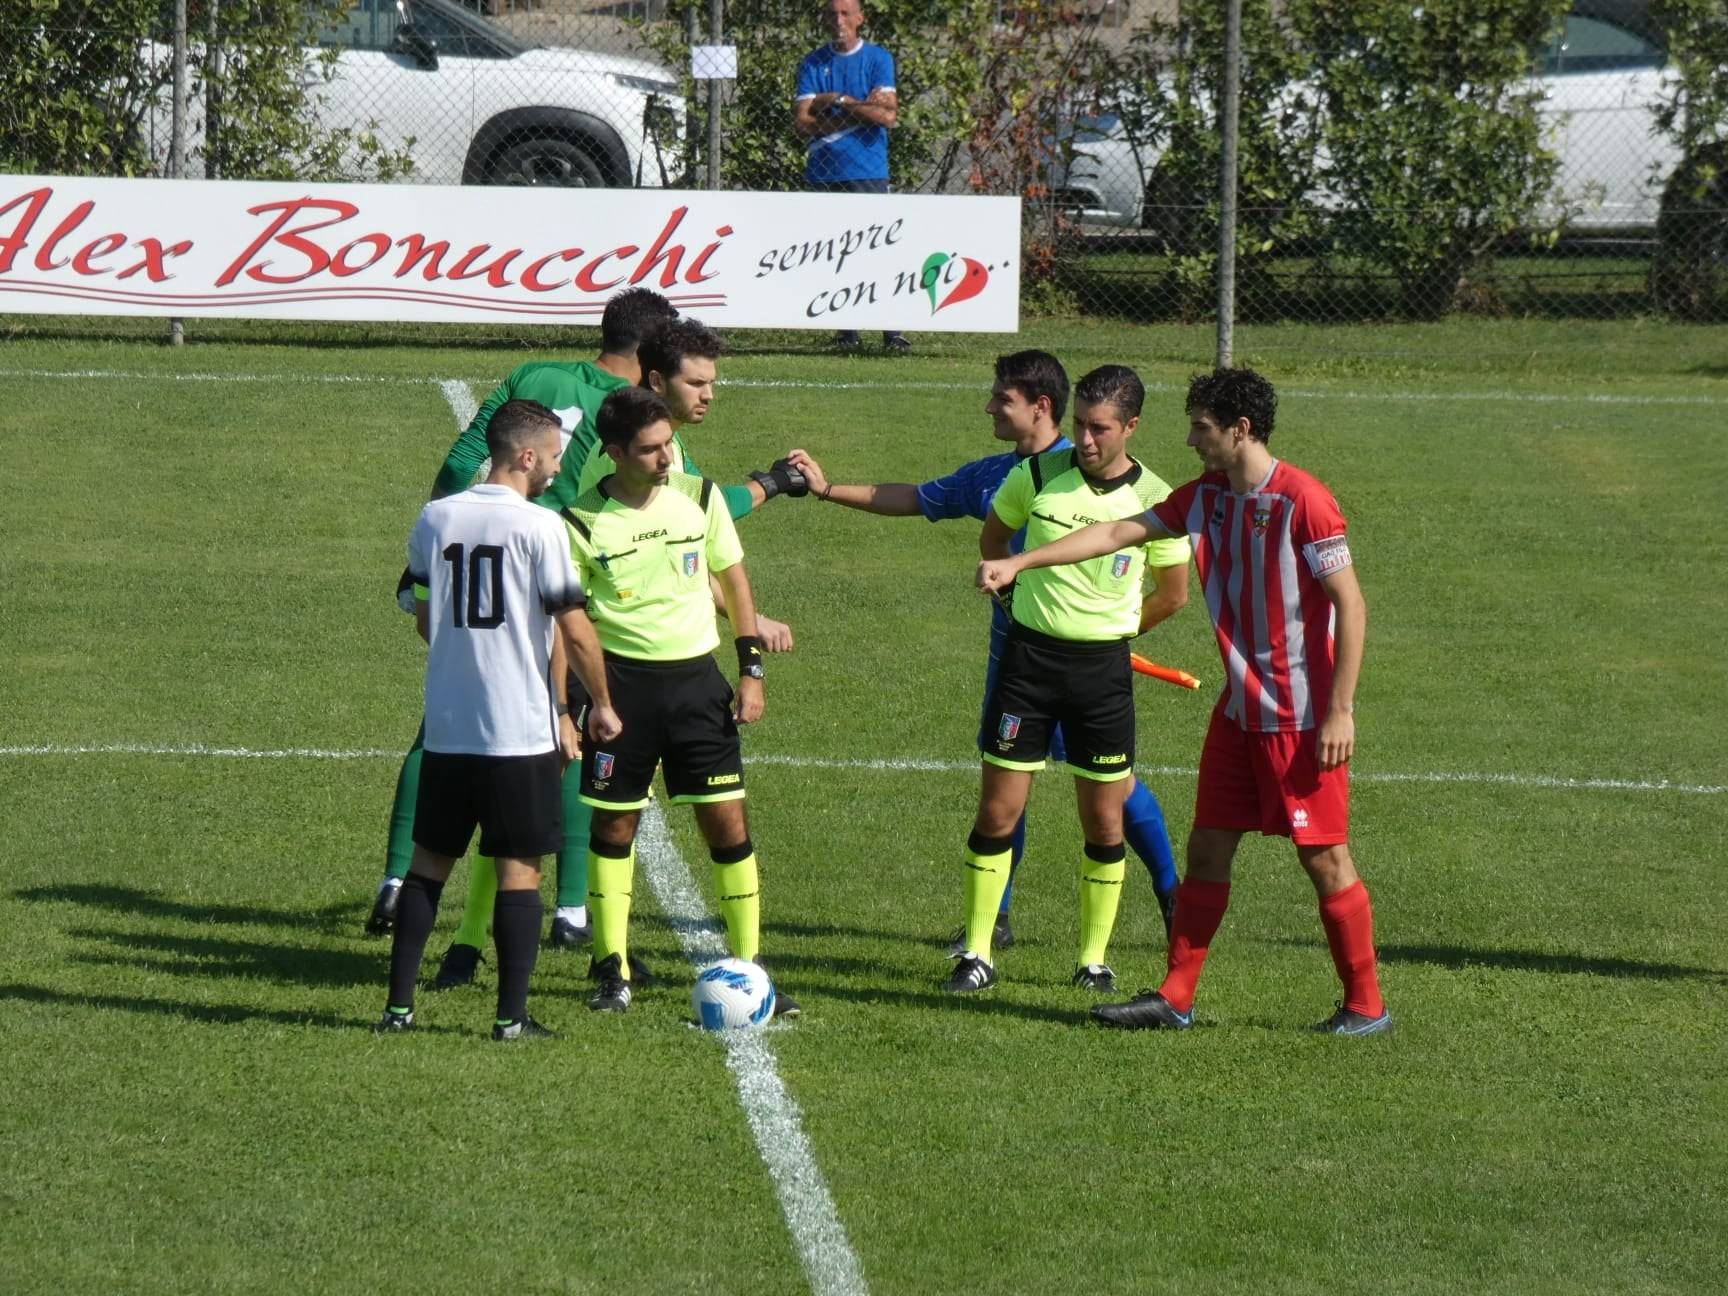 Rolo Langhiranese 4 0 Coppa Italia 22memorial Minetti22